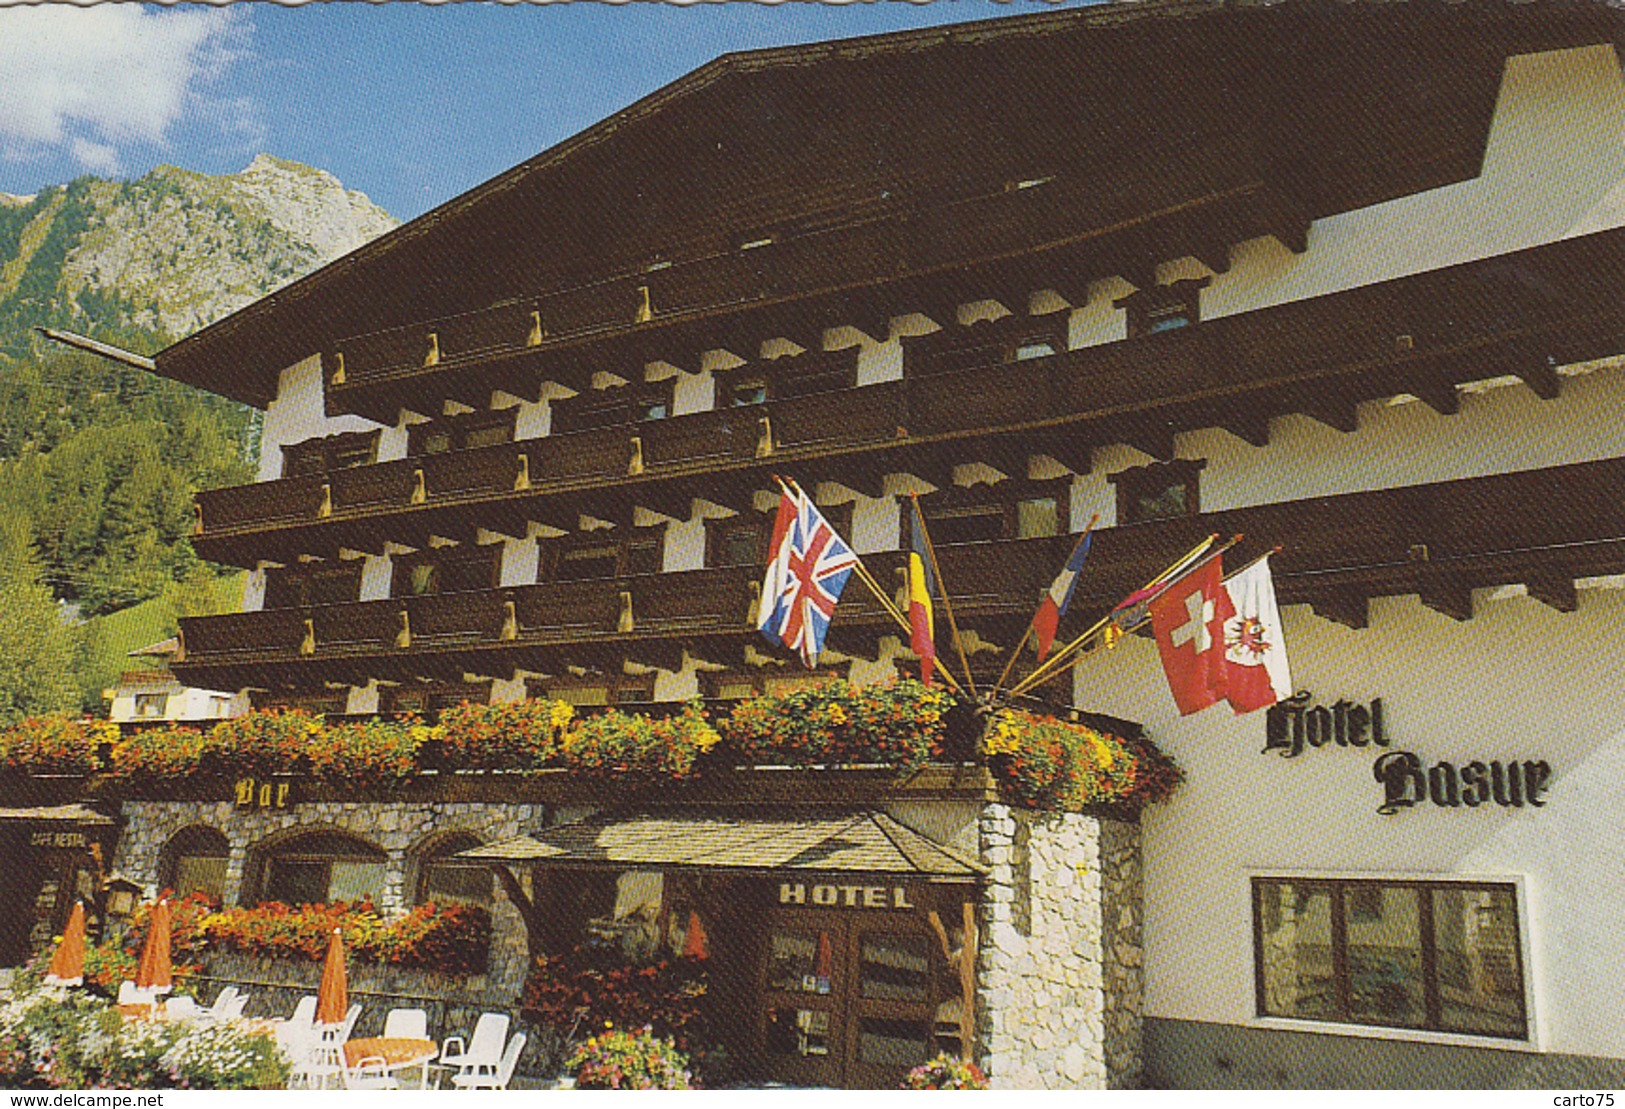 Autriche - Flirsch Am Arlberg - Hotel Basur - Fam. Egger - Landeck